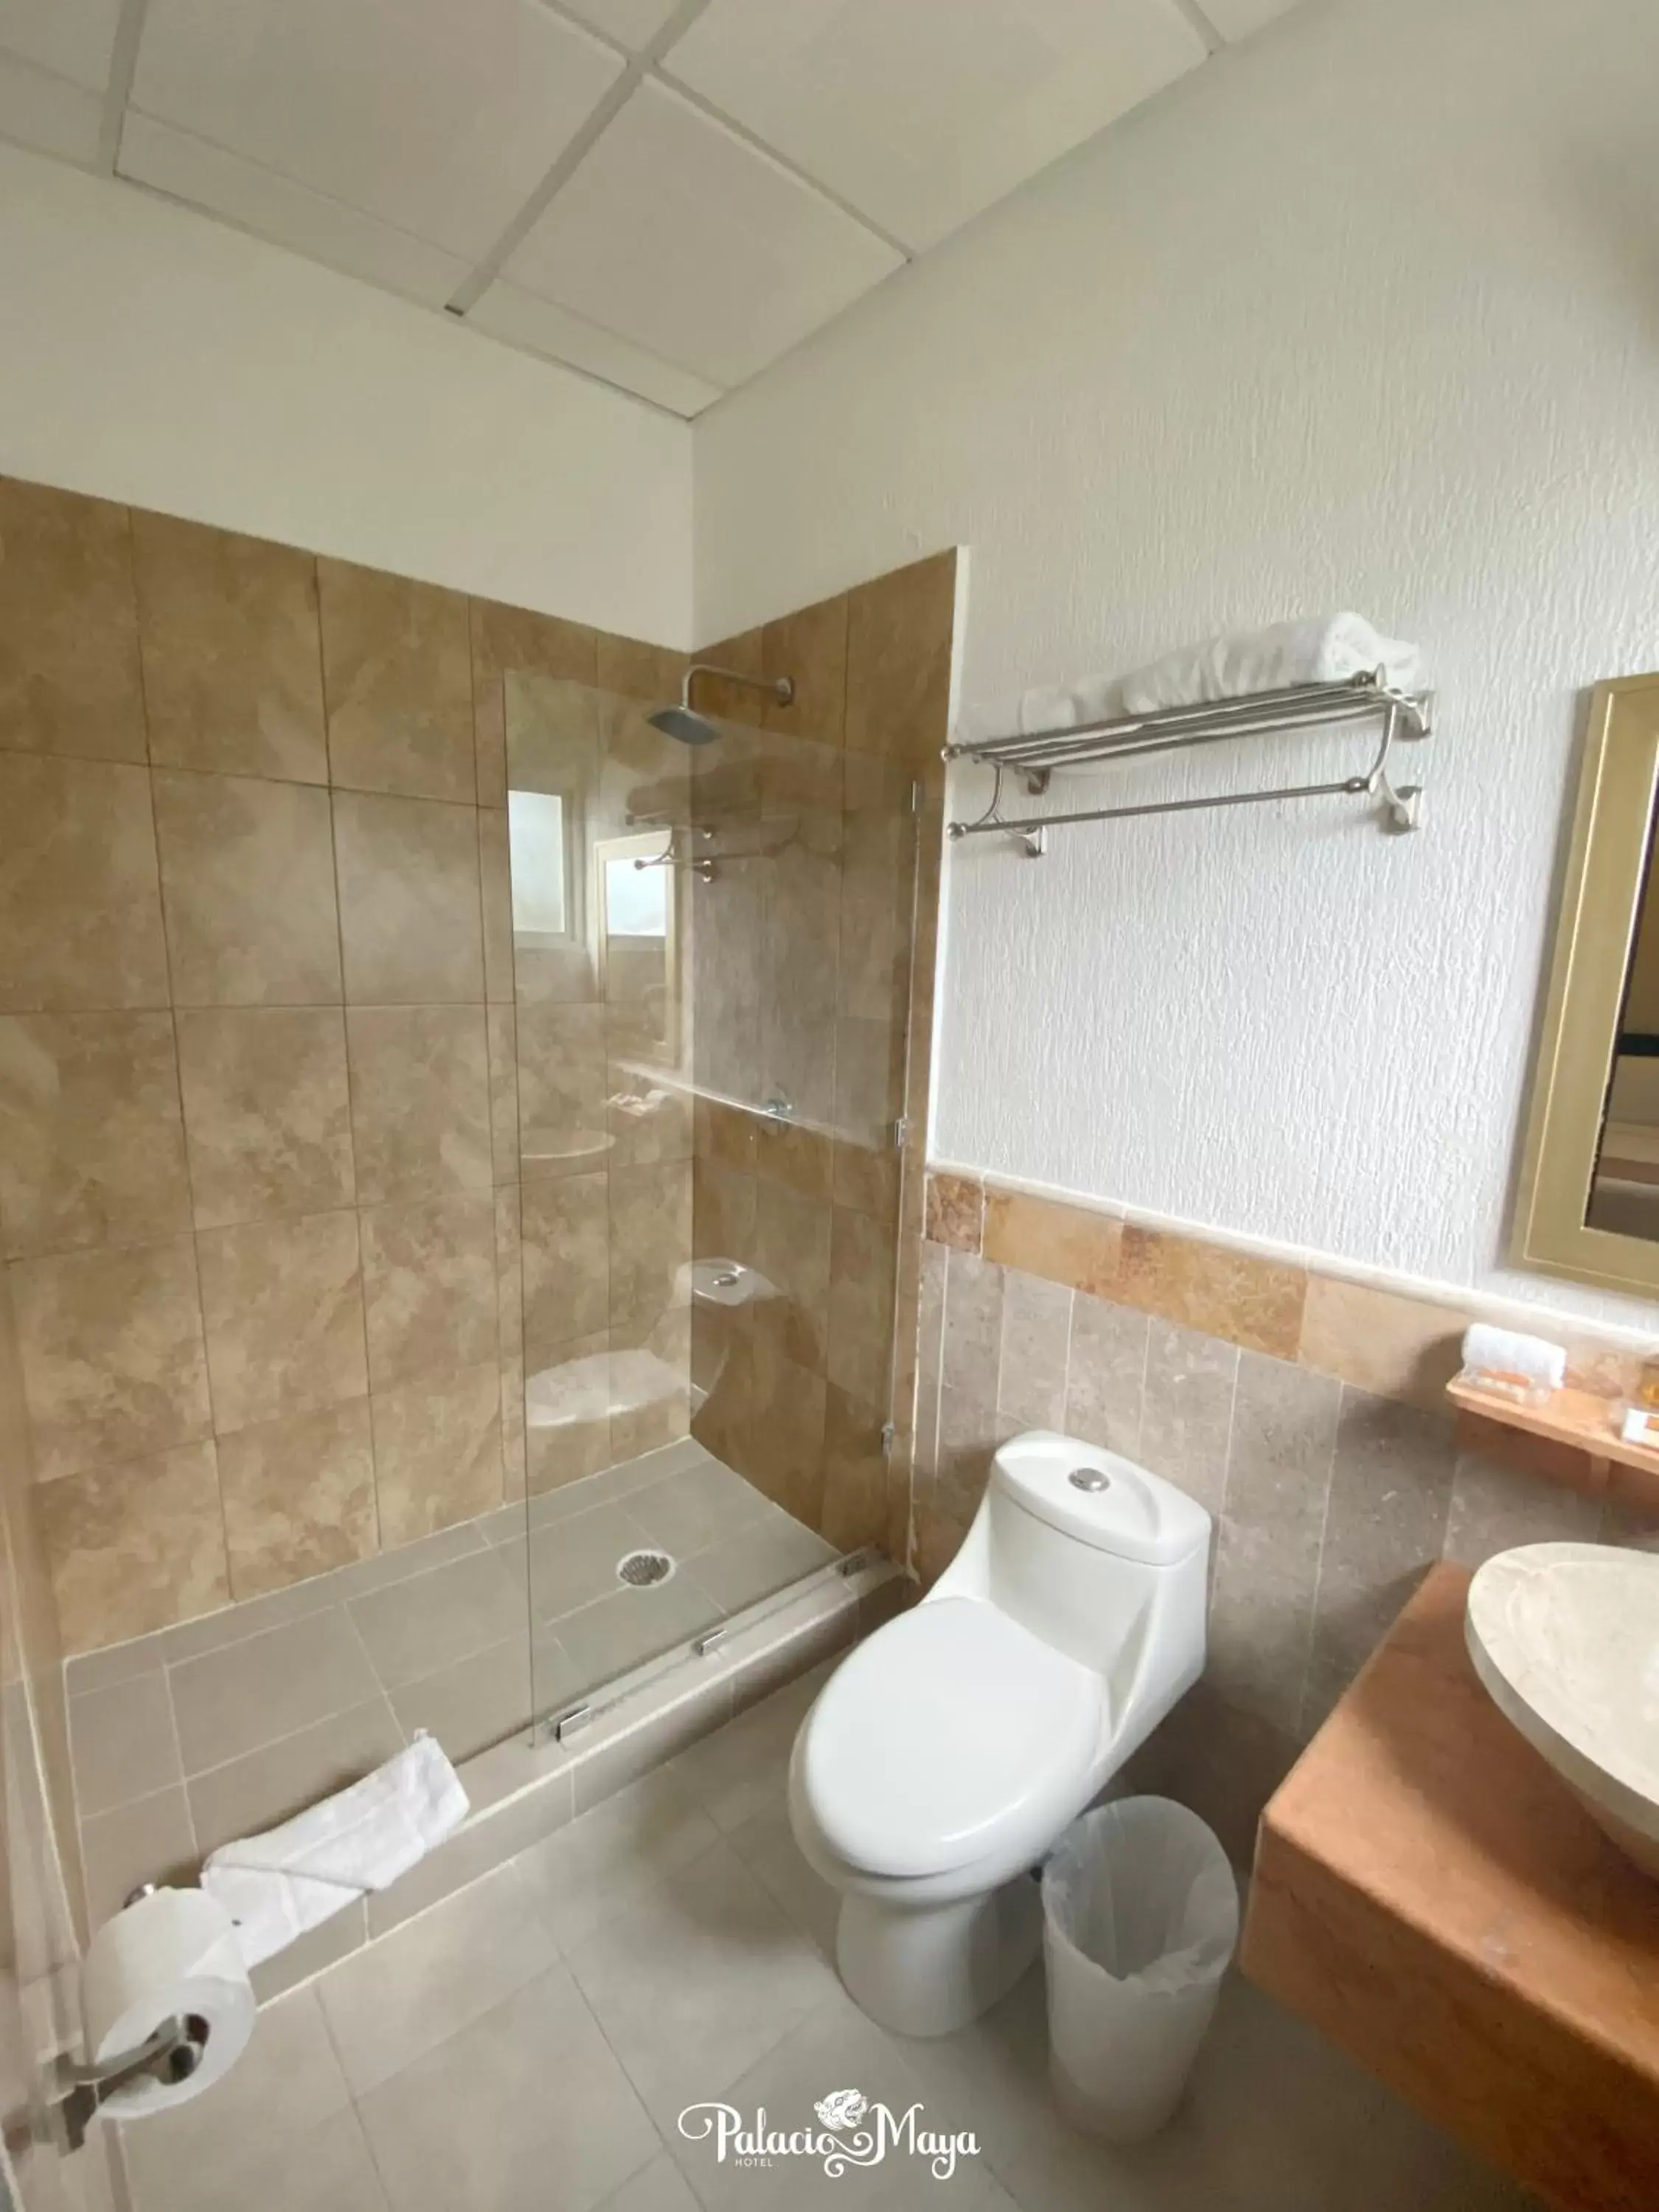 Bathroom in Hotel Palacio Maya